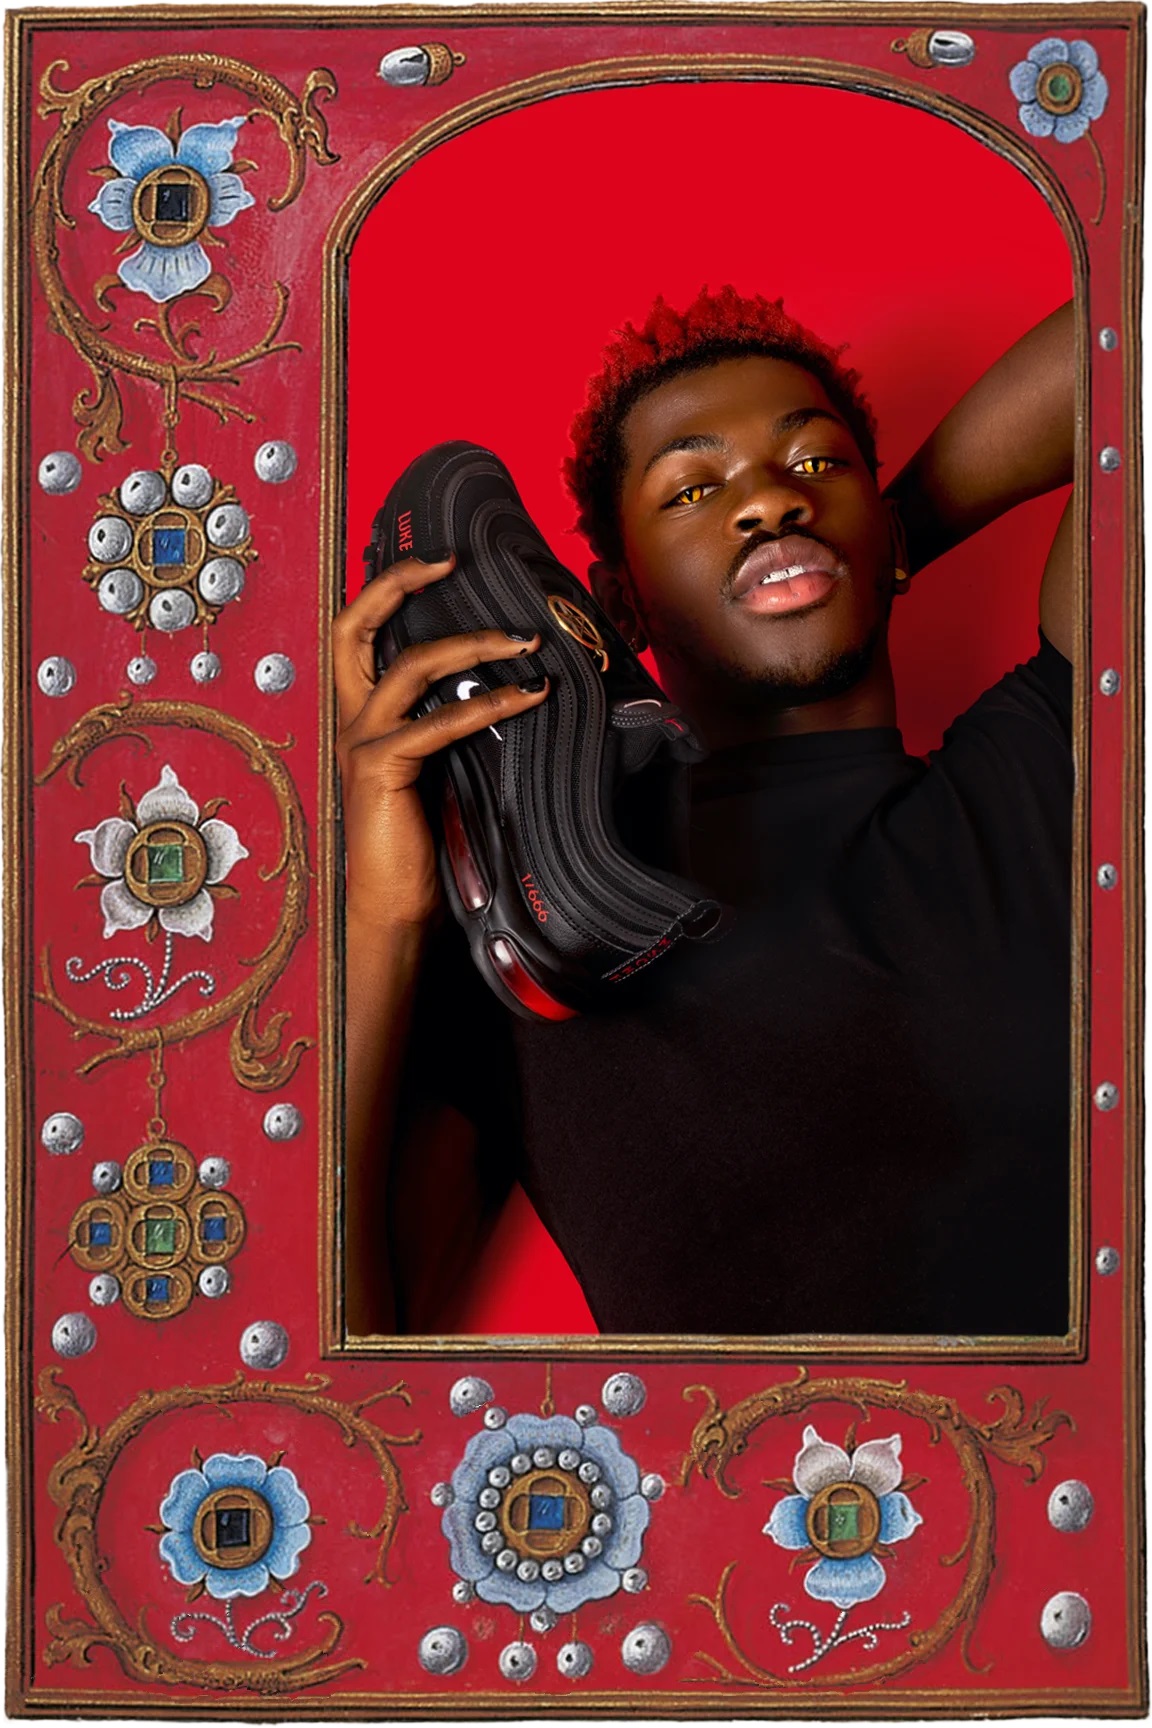 Trước đây, màn collab của rapper nổi tiếng Lil Nas x MSCHF đã bị chỉ trích là 'vô nhân đạo' khi cho ra mắt mẫu sneakers 'Satan Shoes' có chứa máu người. Do có thiết kế tương đồng với dòng Air Max 97 nên nhiều người đã lầm tưởng đây là sản phẩm của thương hiệu Nike. Sau đó, Nike đã đâm đơn kiện và lên tiếng khẳng định thiết kế Satan Shoes không liên quan đến hãng.